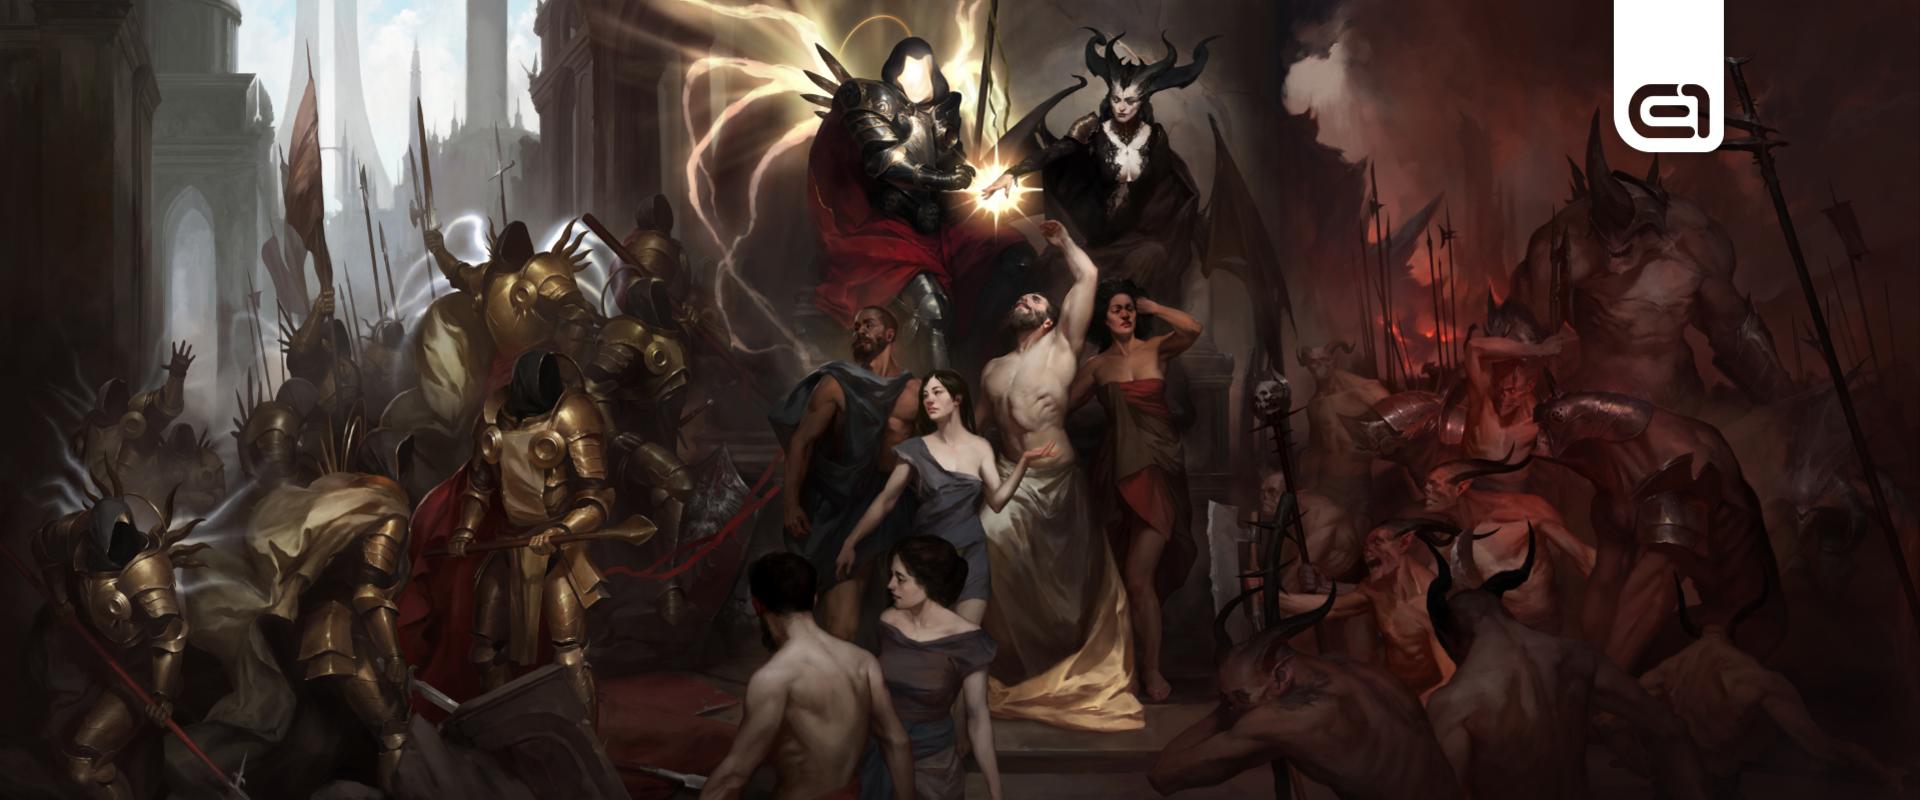 Értékes kincseket rejt a Diablo IV Collector’s Edition, csak pont a lényeg hiányzik belőle